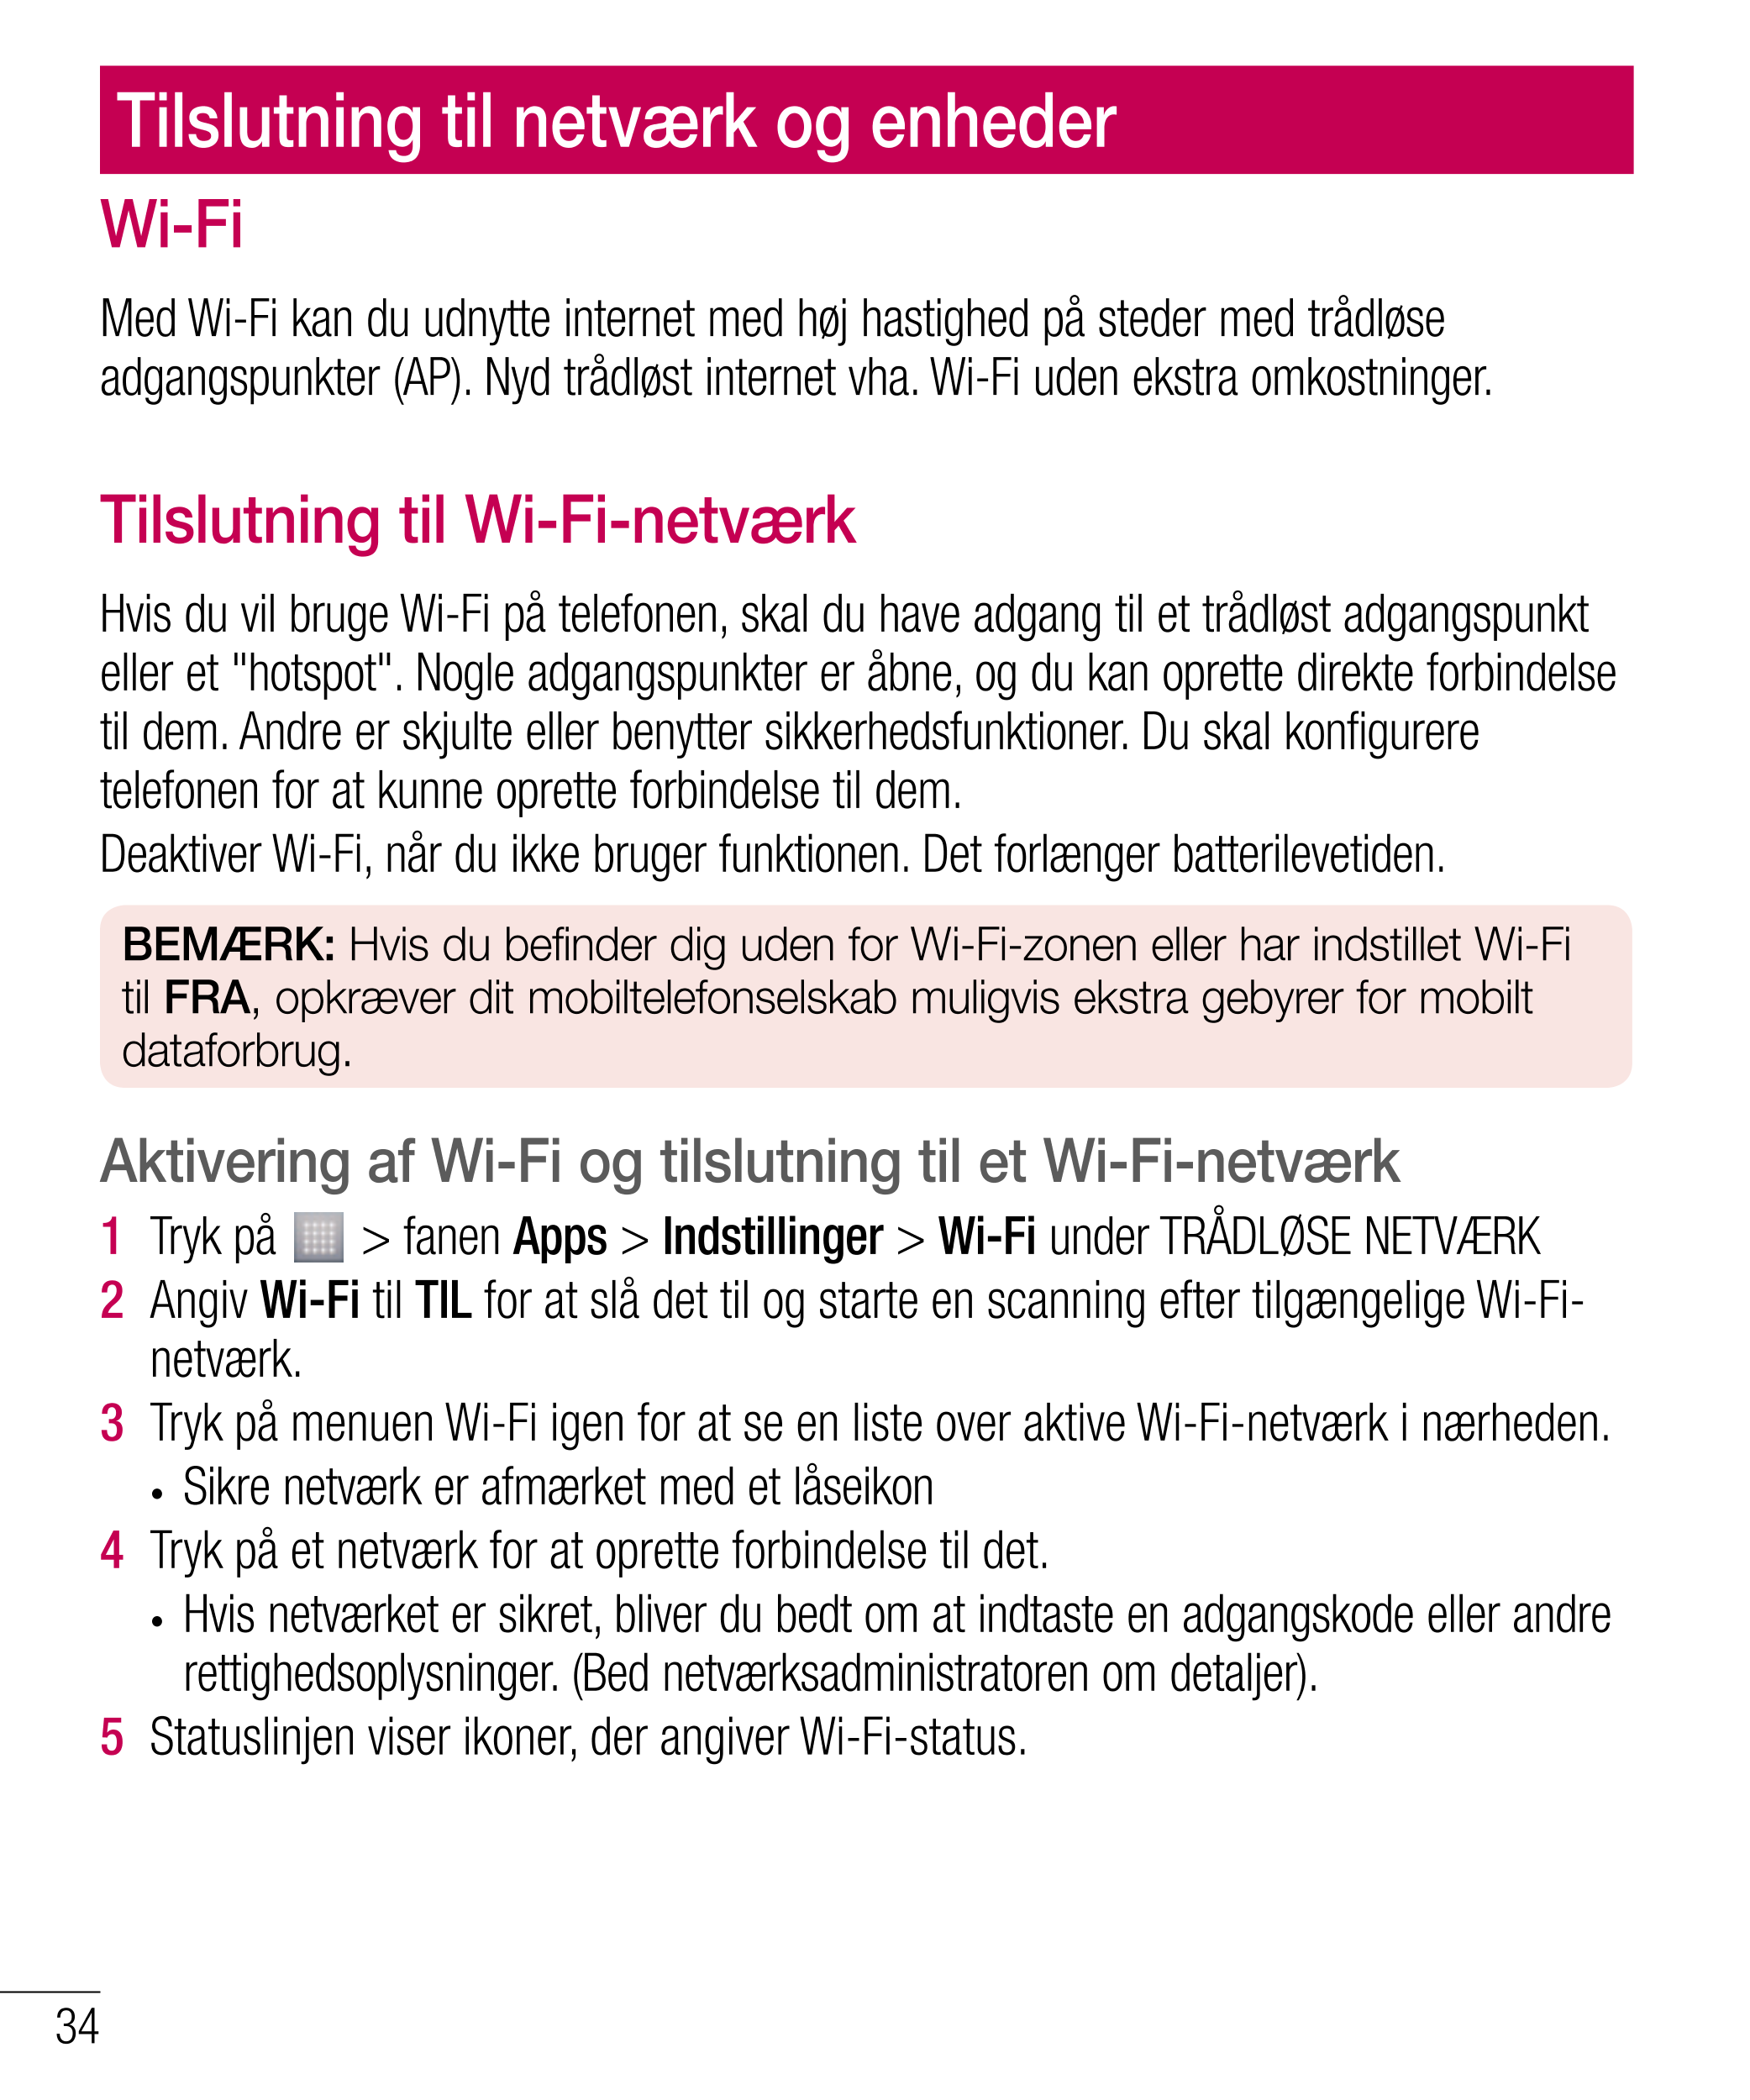 Tilslutning til netværk og enheder
Wi-Fi
Med Wi-Fi kan du udnytte internet med høj hastighed på steder med trådløse 
adgangspunk